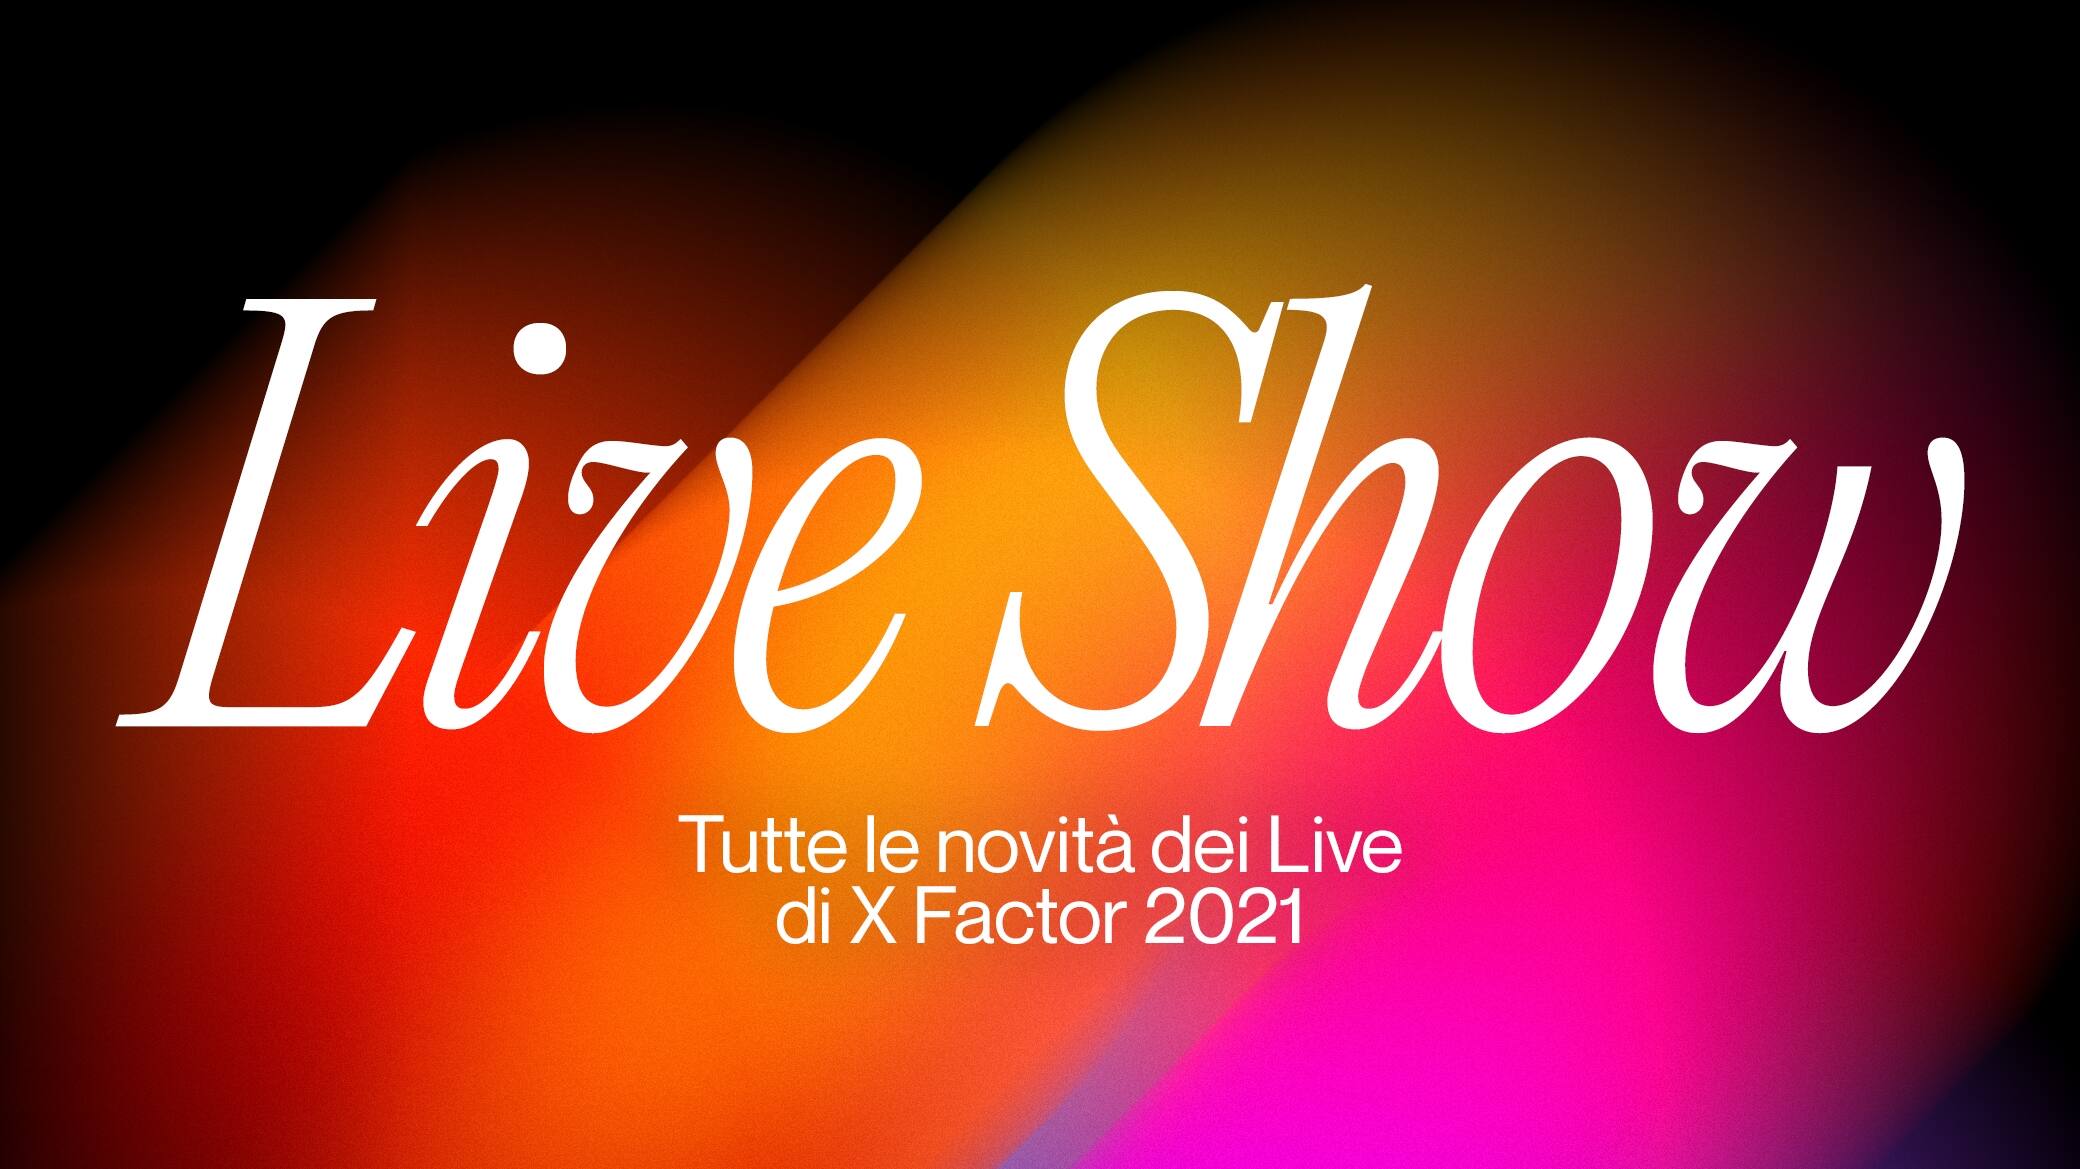 X Factor 2021: da giovedì 28 ottobre al via i Live, il primo sarà dedicato agli inediti